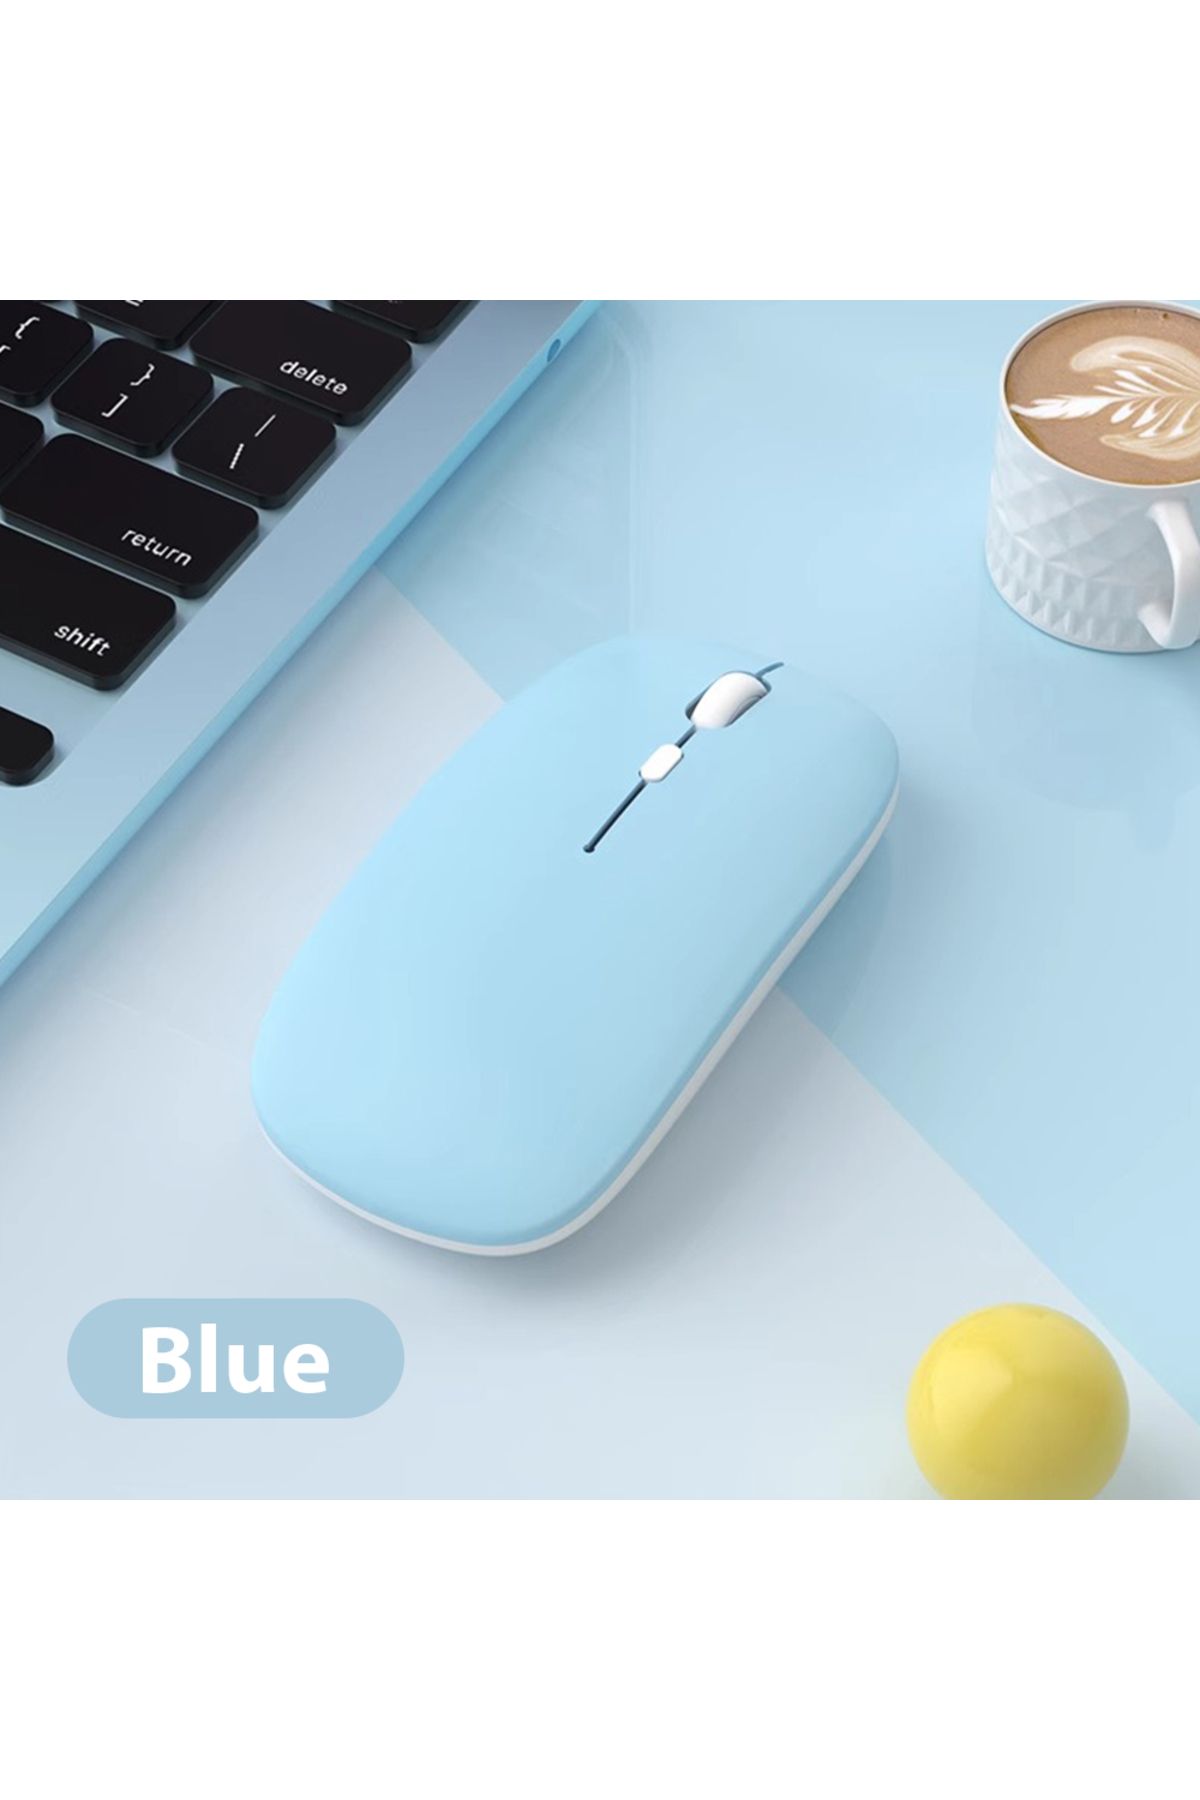 TEKNETSTORE Macbook/Huawei/Samsung/Lenovo Uyumlu Şarj Edilebilir Sessiz Mouse Wifi Kablosuz Mouse Fare